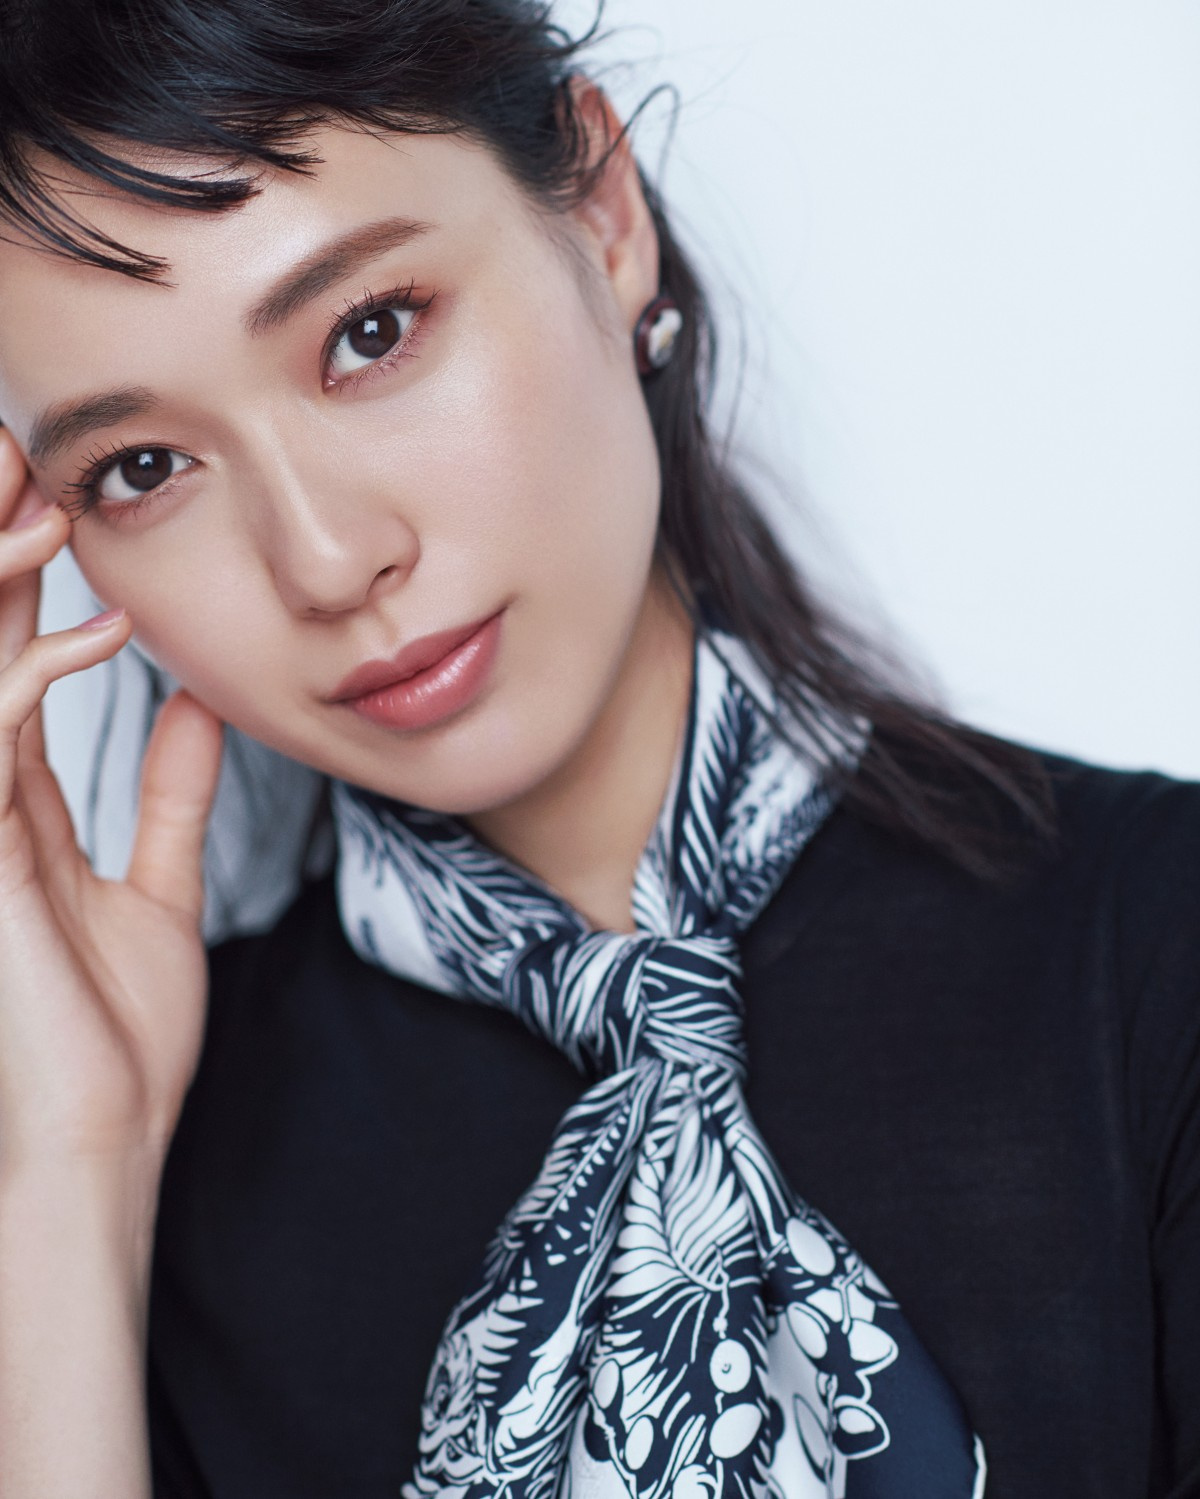 戸田恵梨香 役者としての第2章に足を踏み入れた 30歳を迎えた今の思いを語る Oricon News